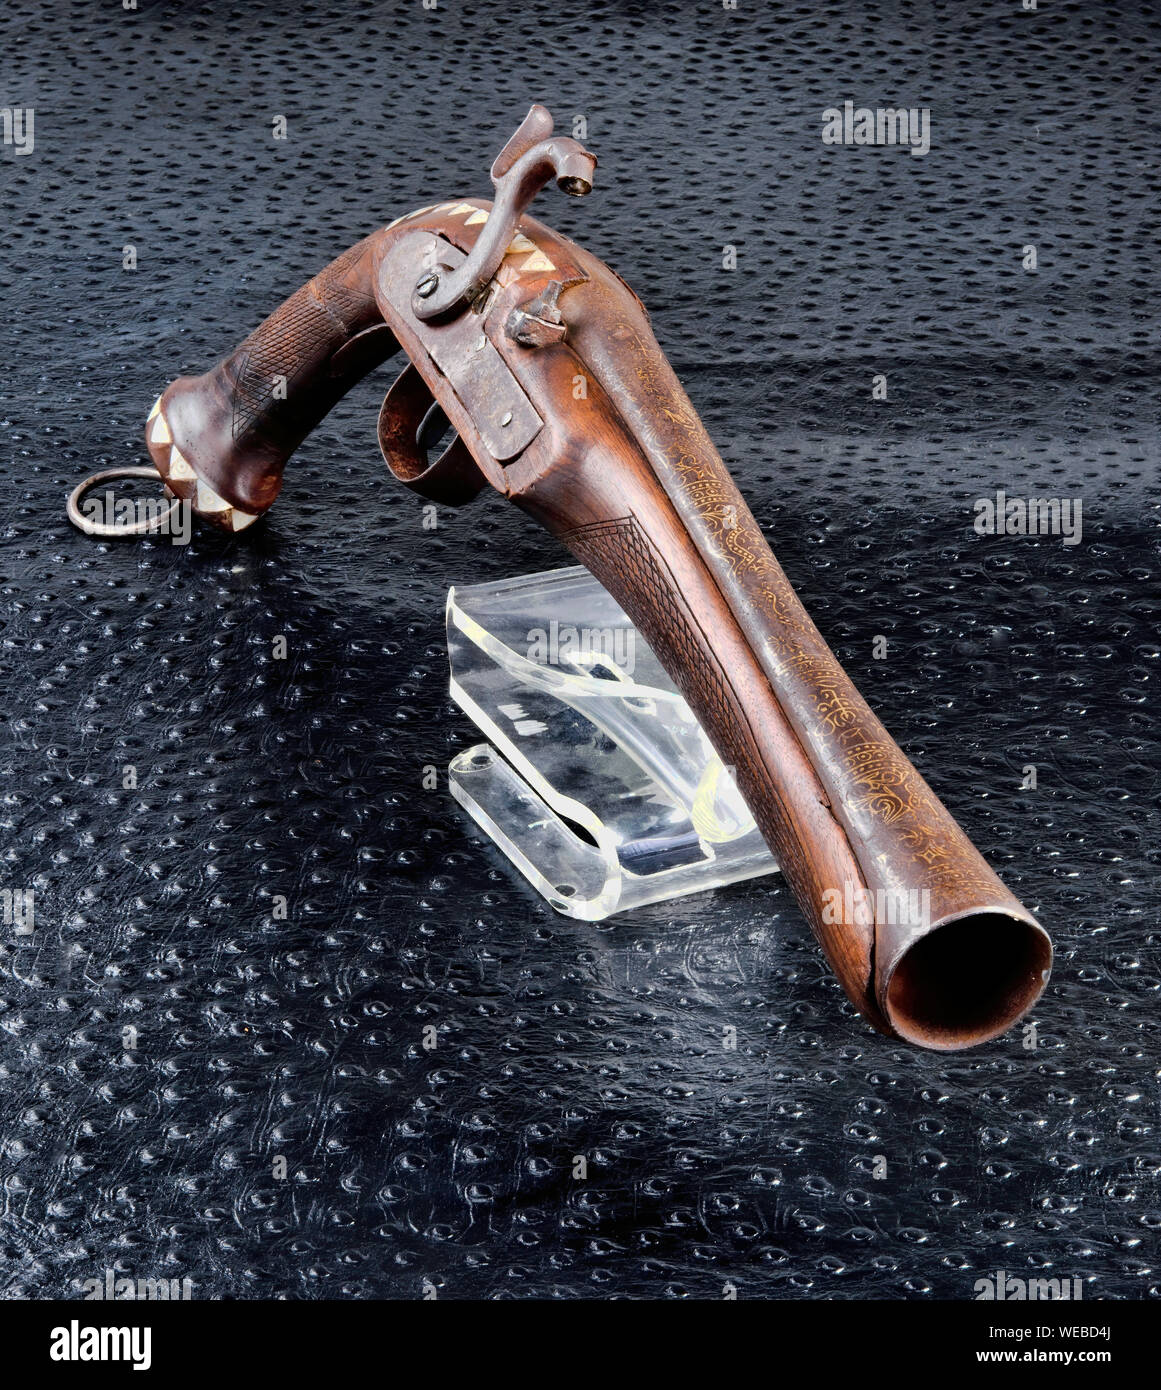 Du moyen orient antique pistolet espingole fait autour de 1860. Banque D'Images